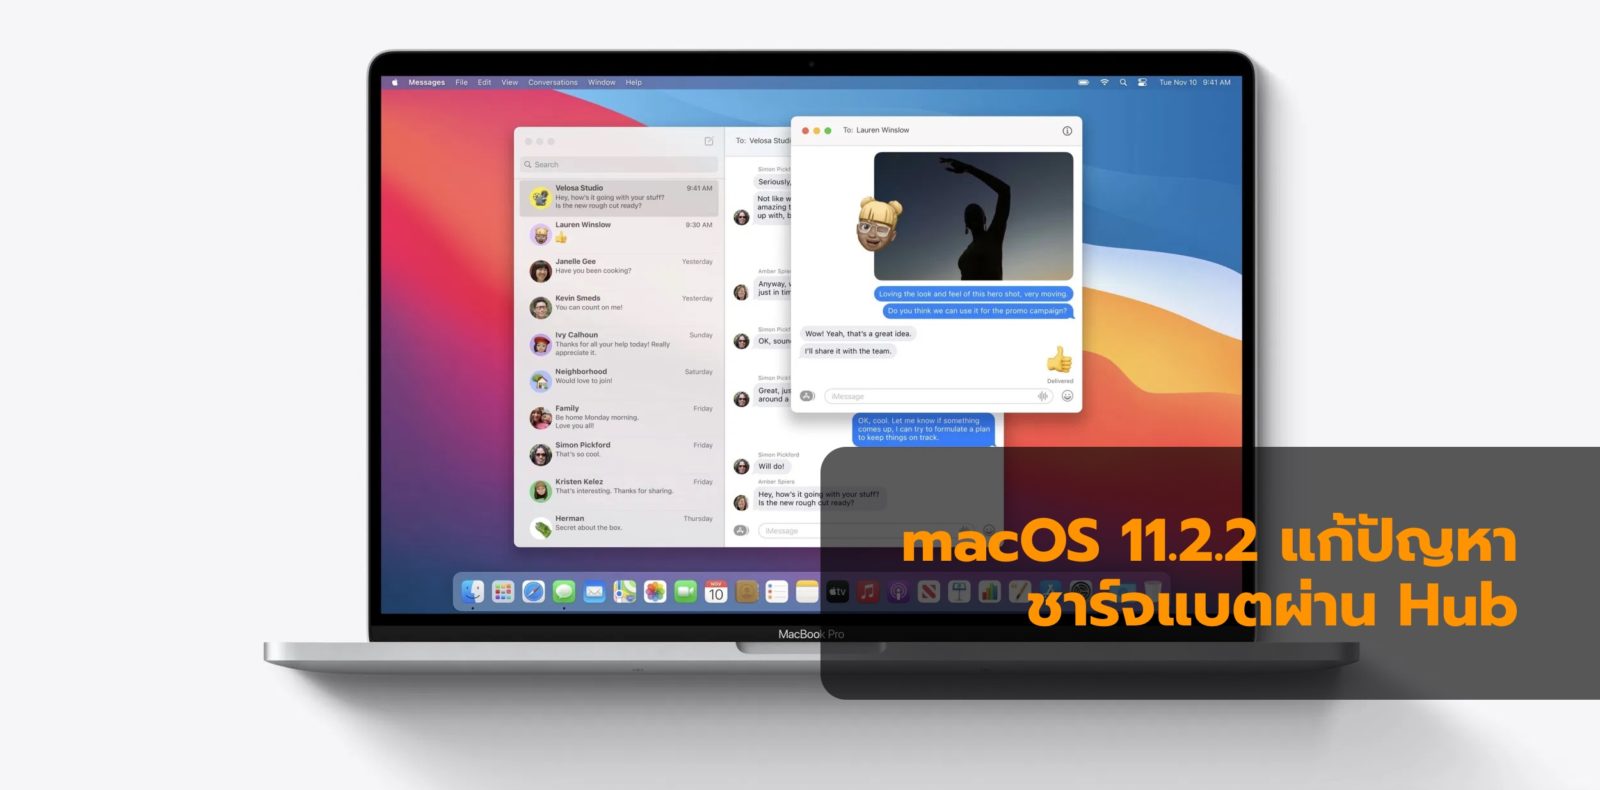 macos hub | apple | Apple ส่ง macOS Big Sur 11.2.2 ไม่ให้ชาร์จผ่านฮับที่ไม่ได้มาตรฐาน